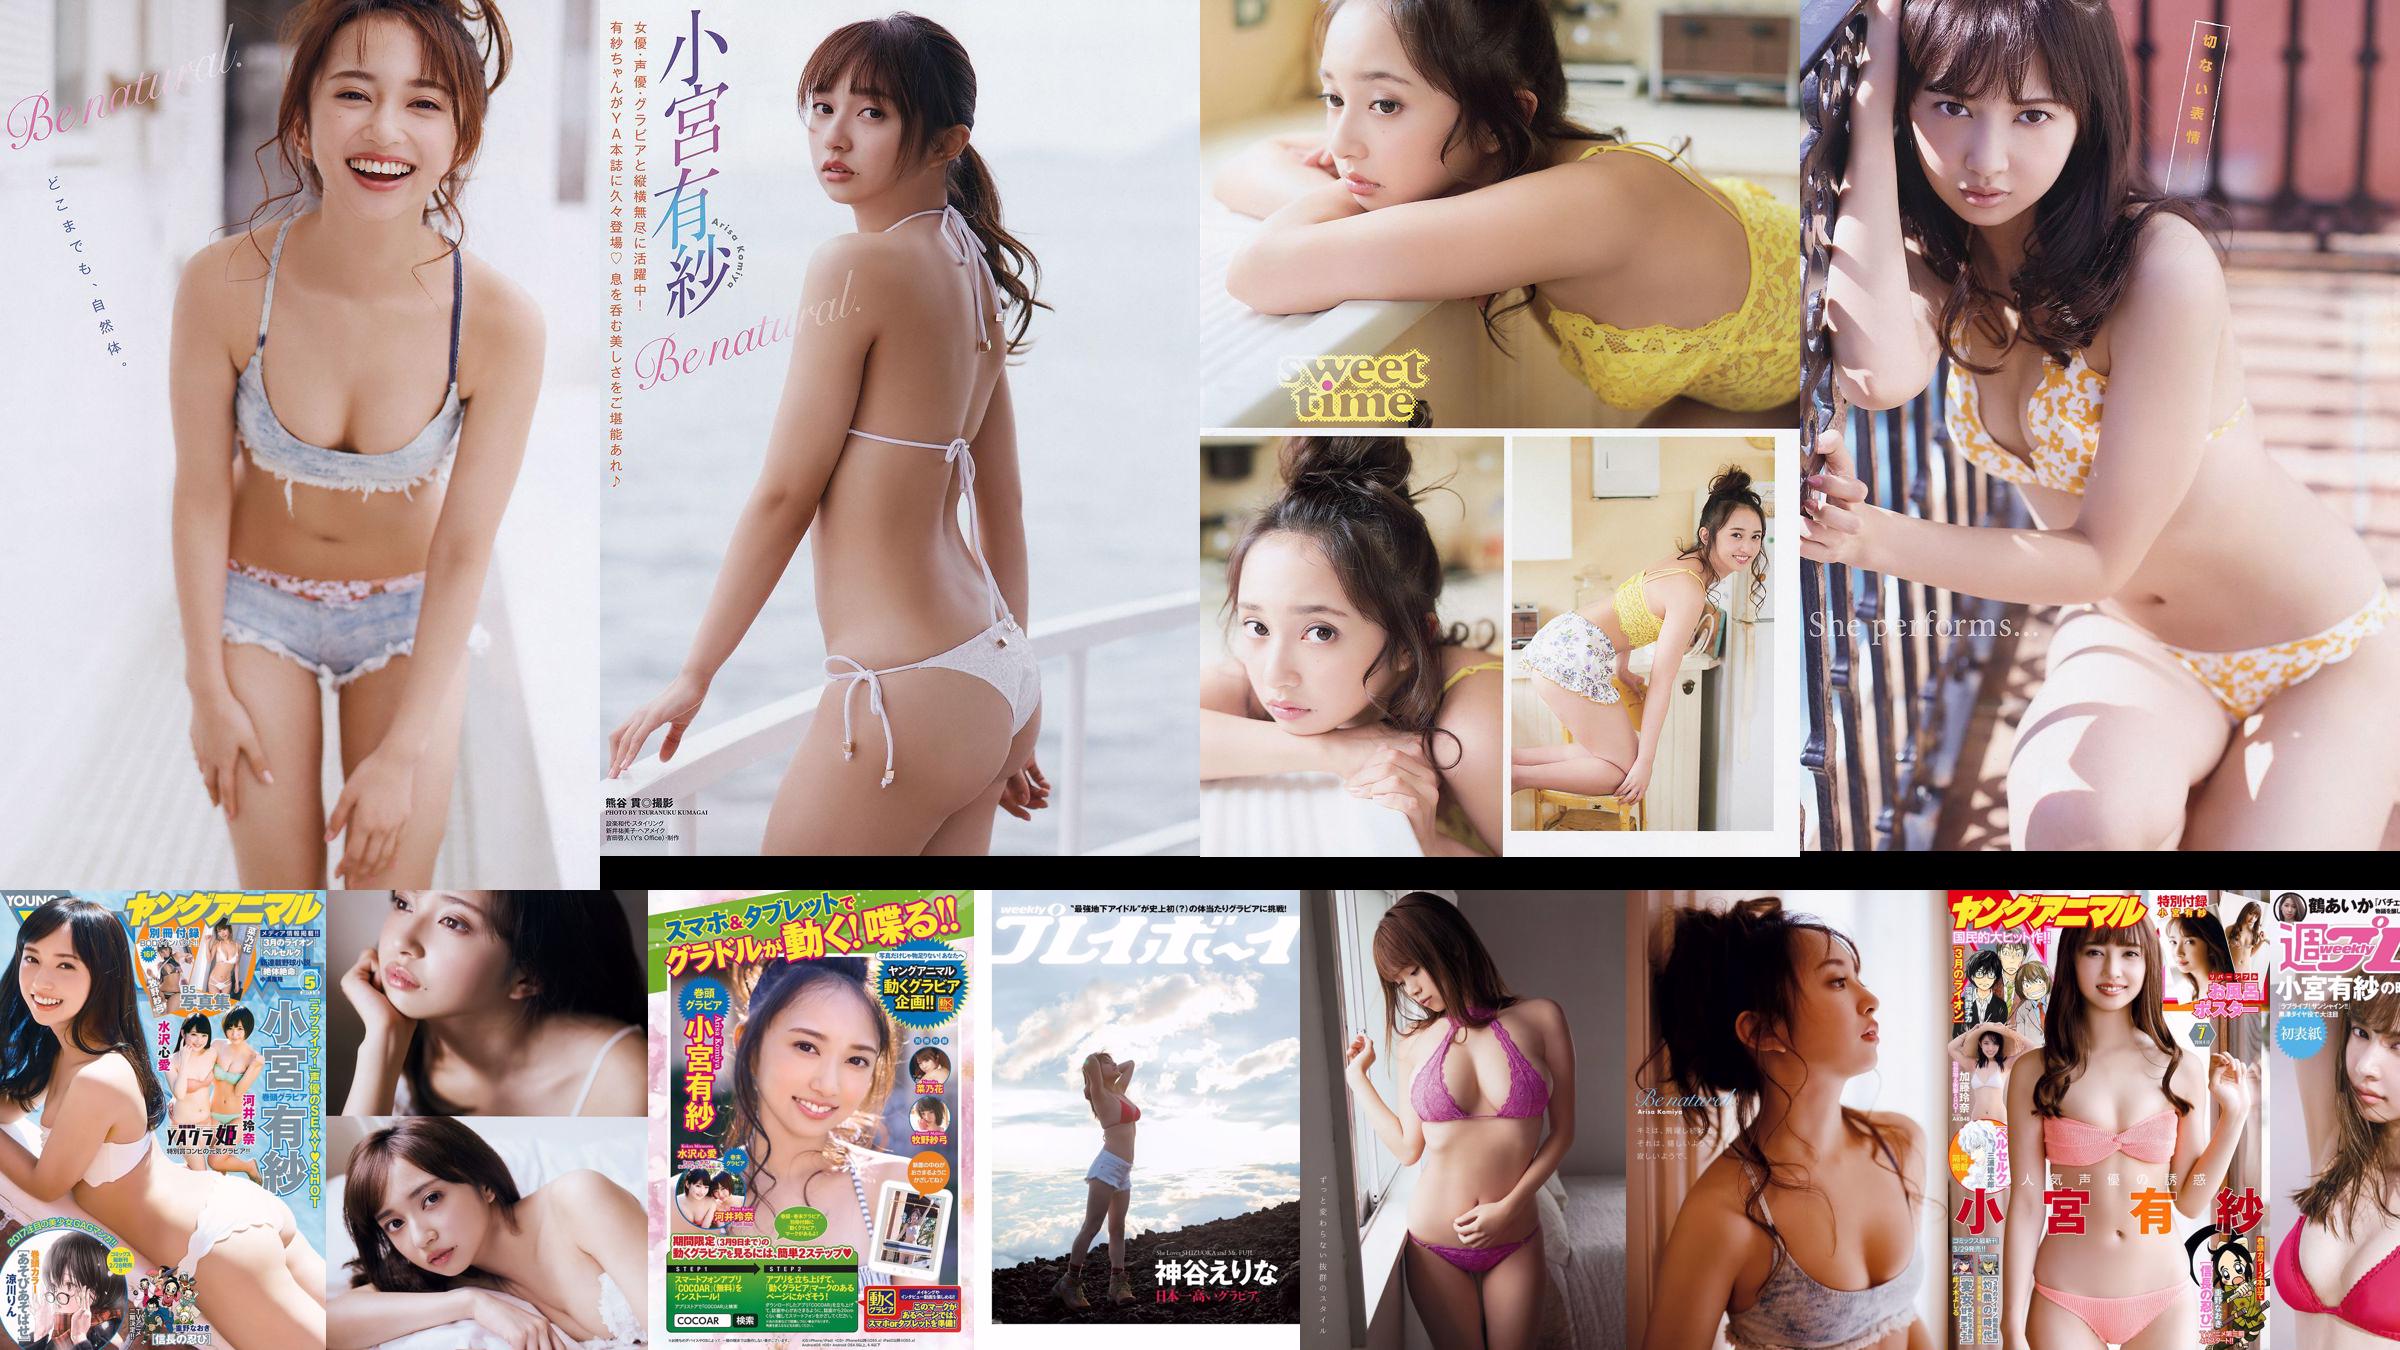 Arisa Komiya Rena Kato [Động vật trẻ] Tạp chí ảnh số 07 năm 2018 No.6f94b2 Trang 8